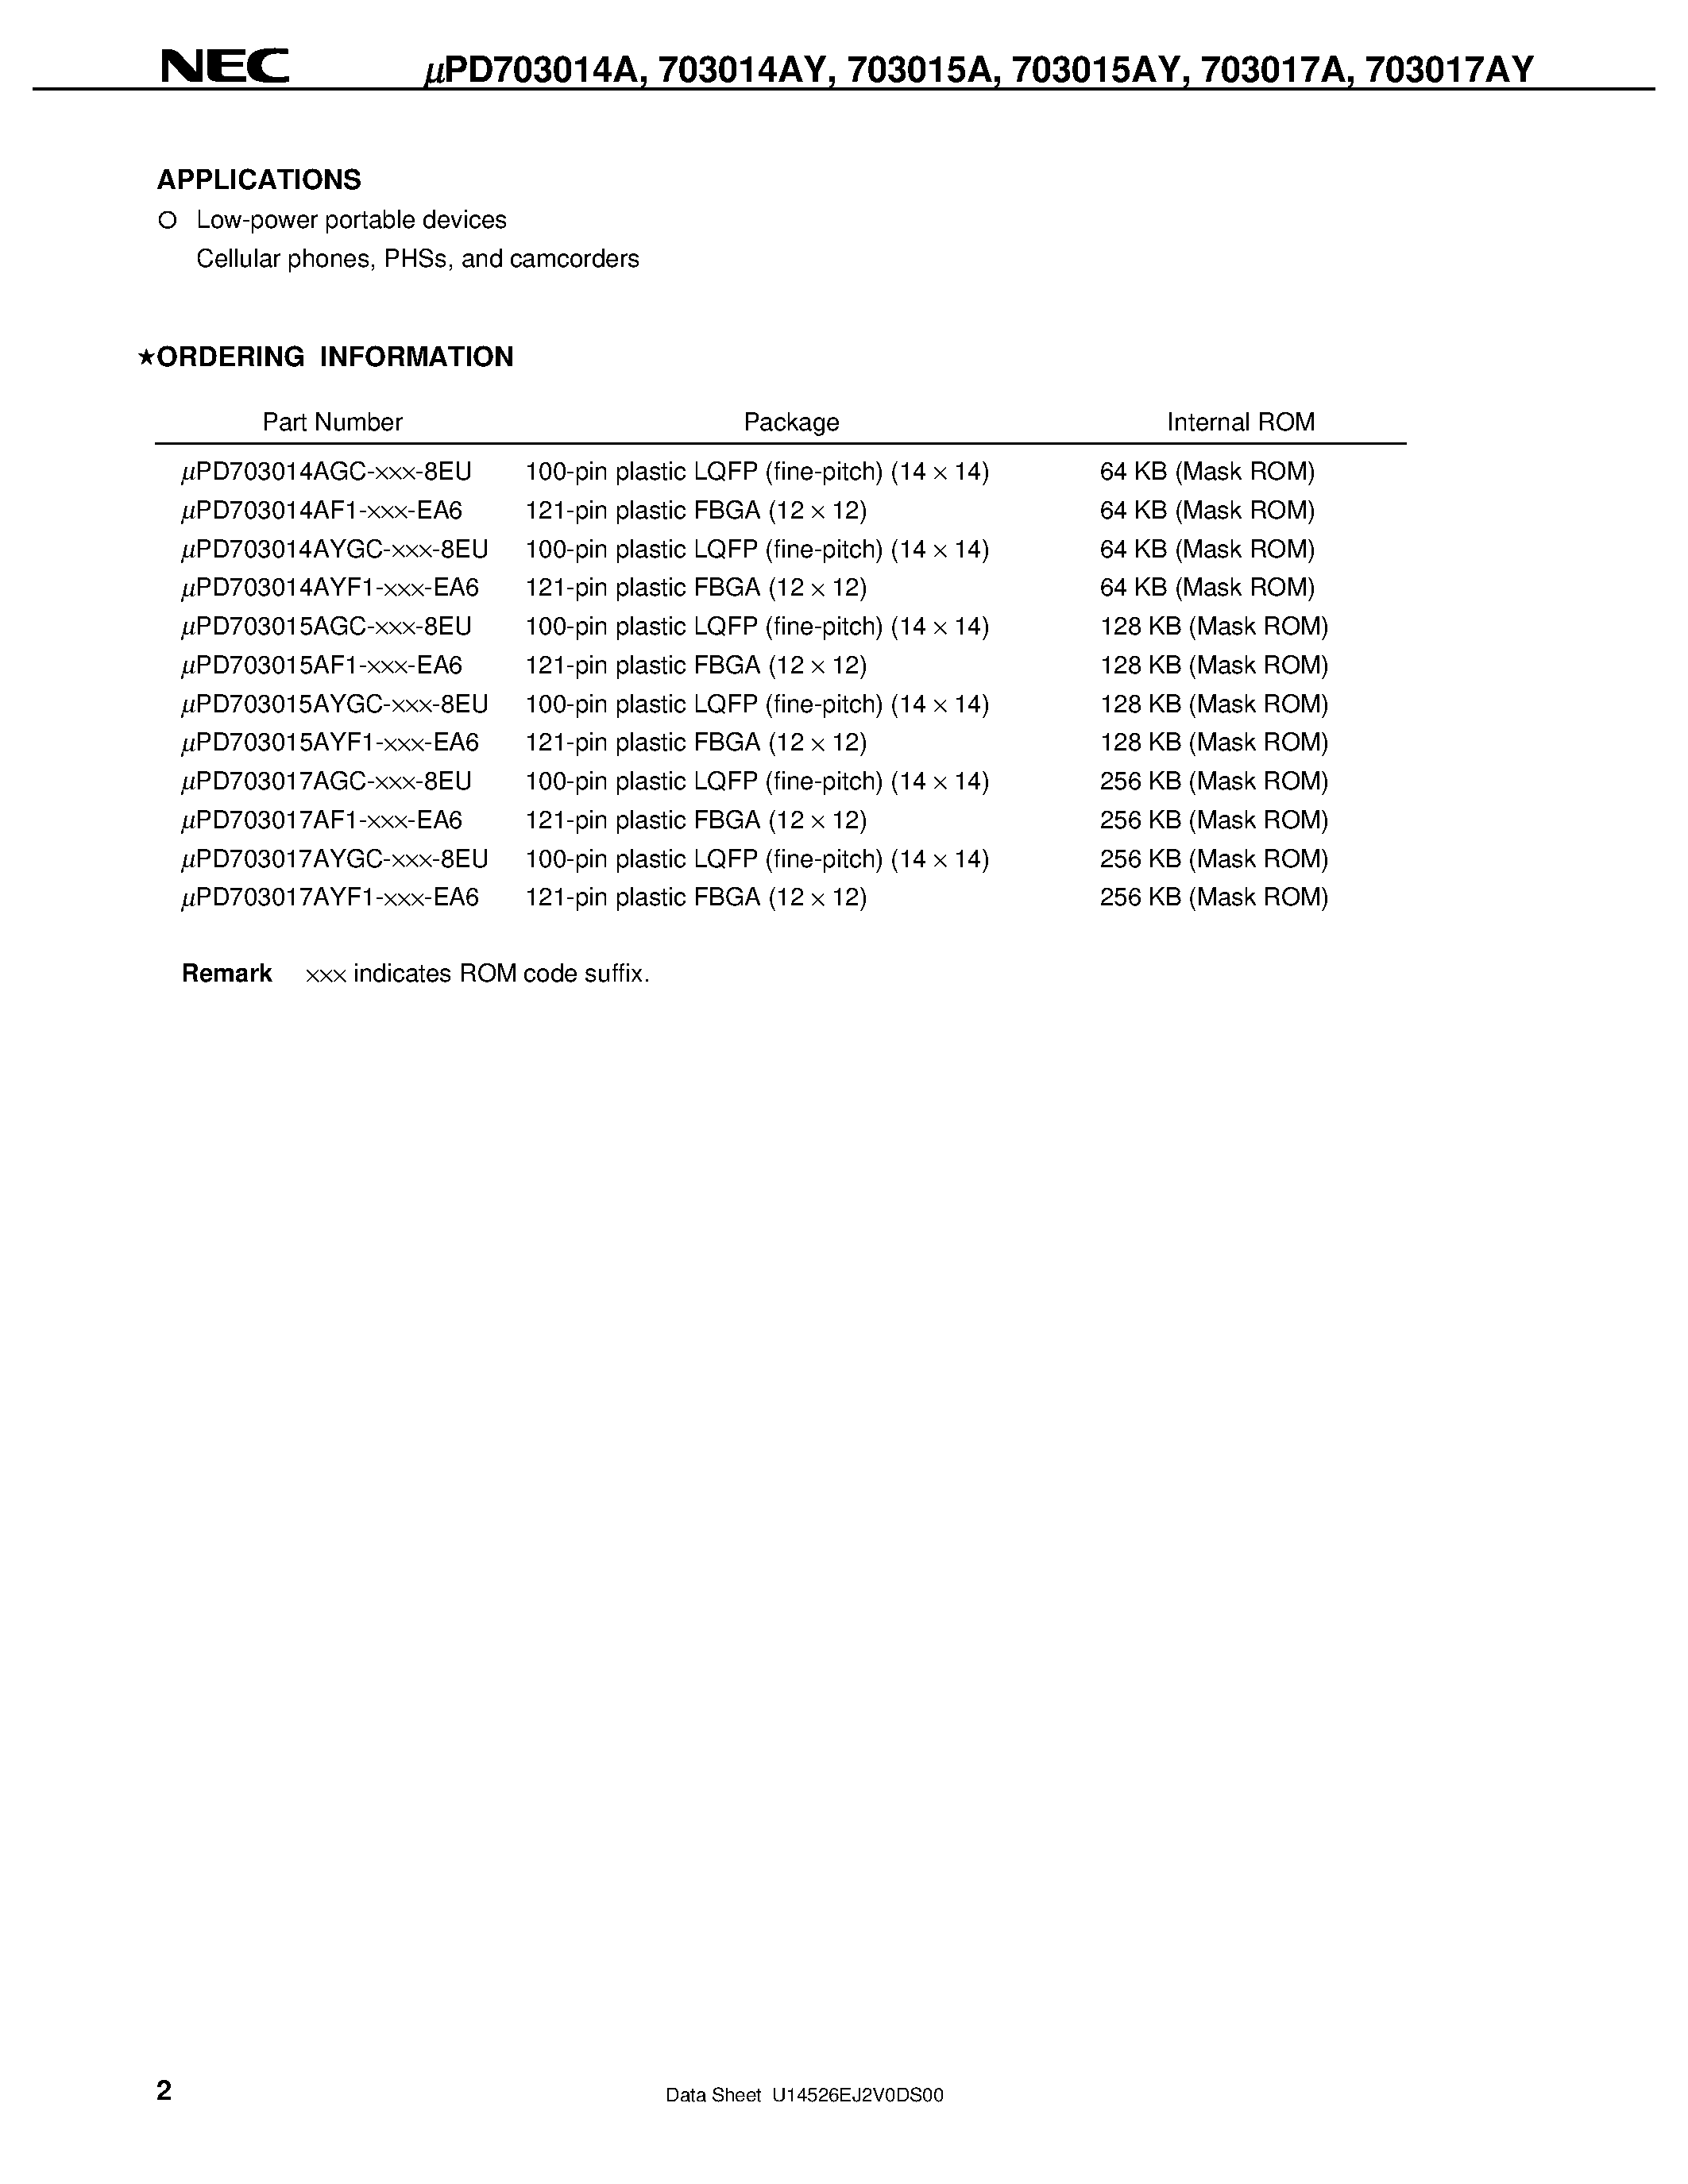 Datasheet UPD703014AY - V850/SA1TM 32-/16-BIT SINGLE-CHIP MICROCONTROLLER page 2